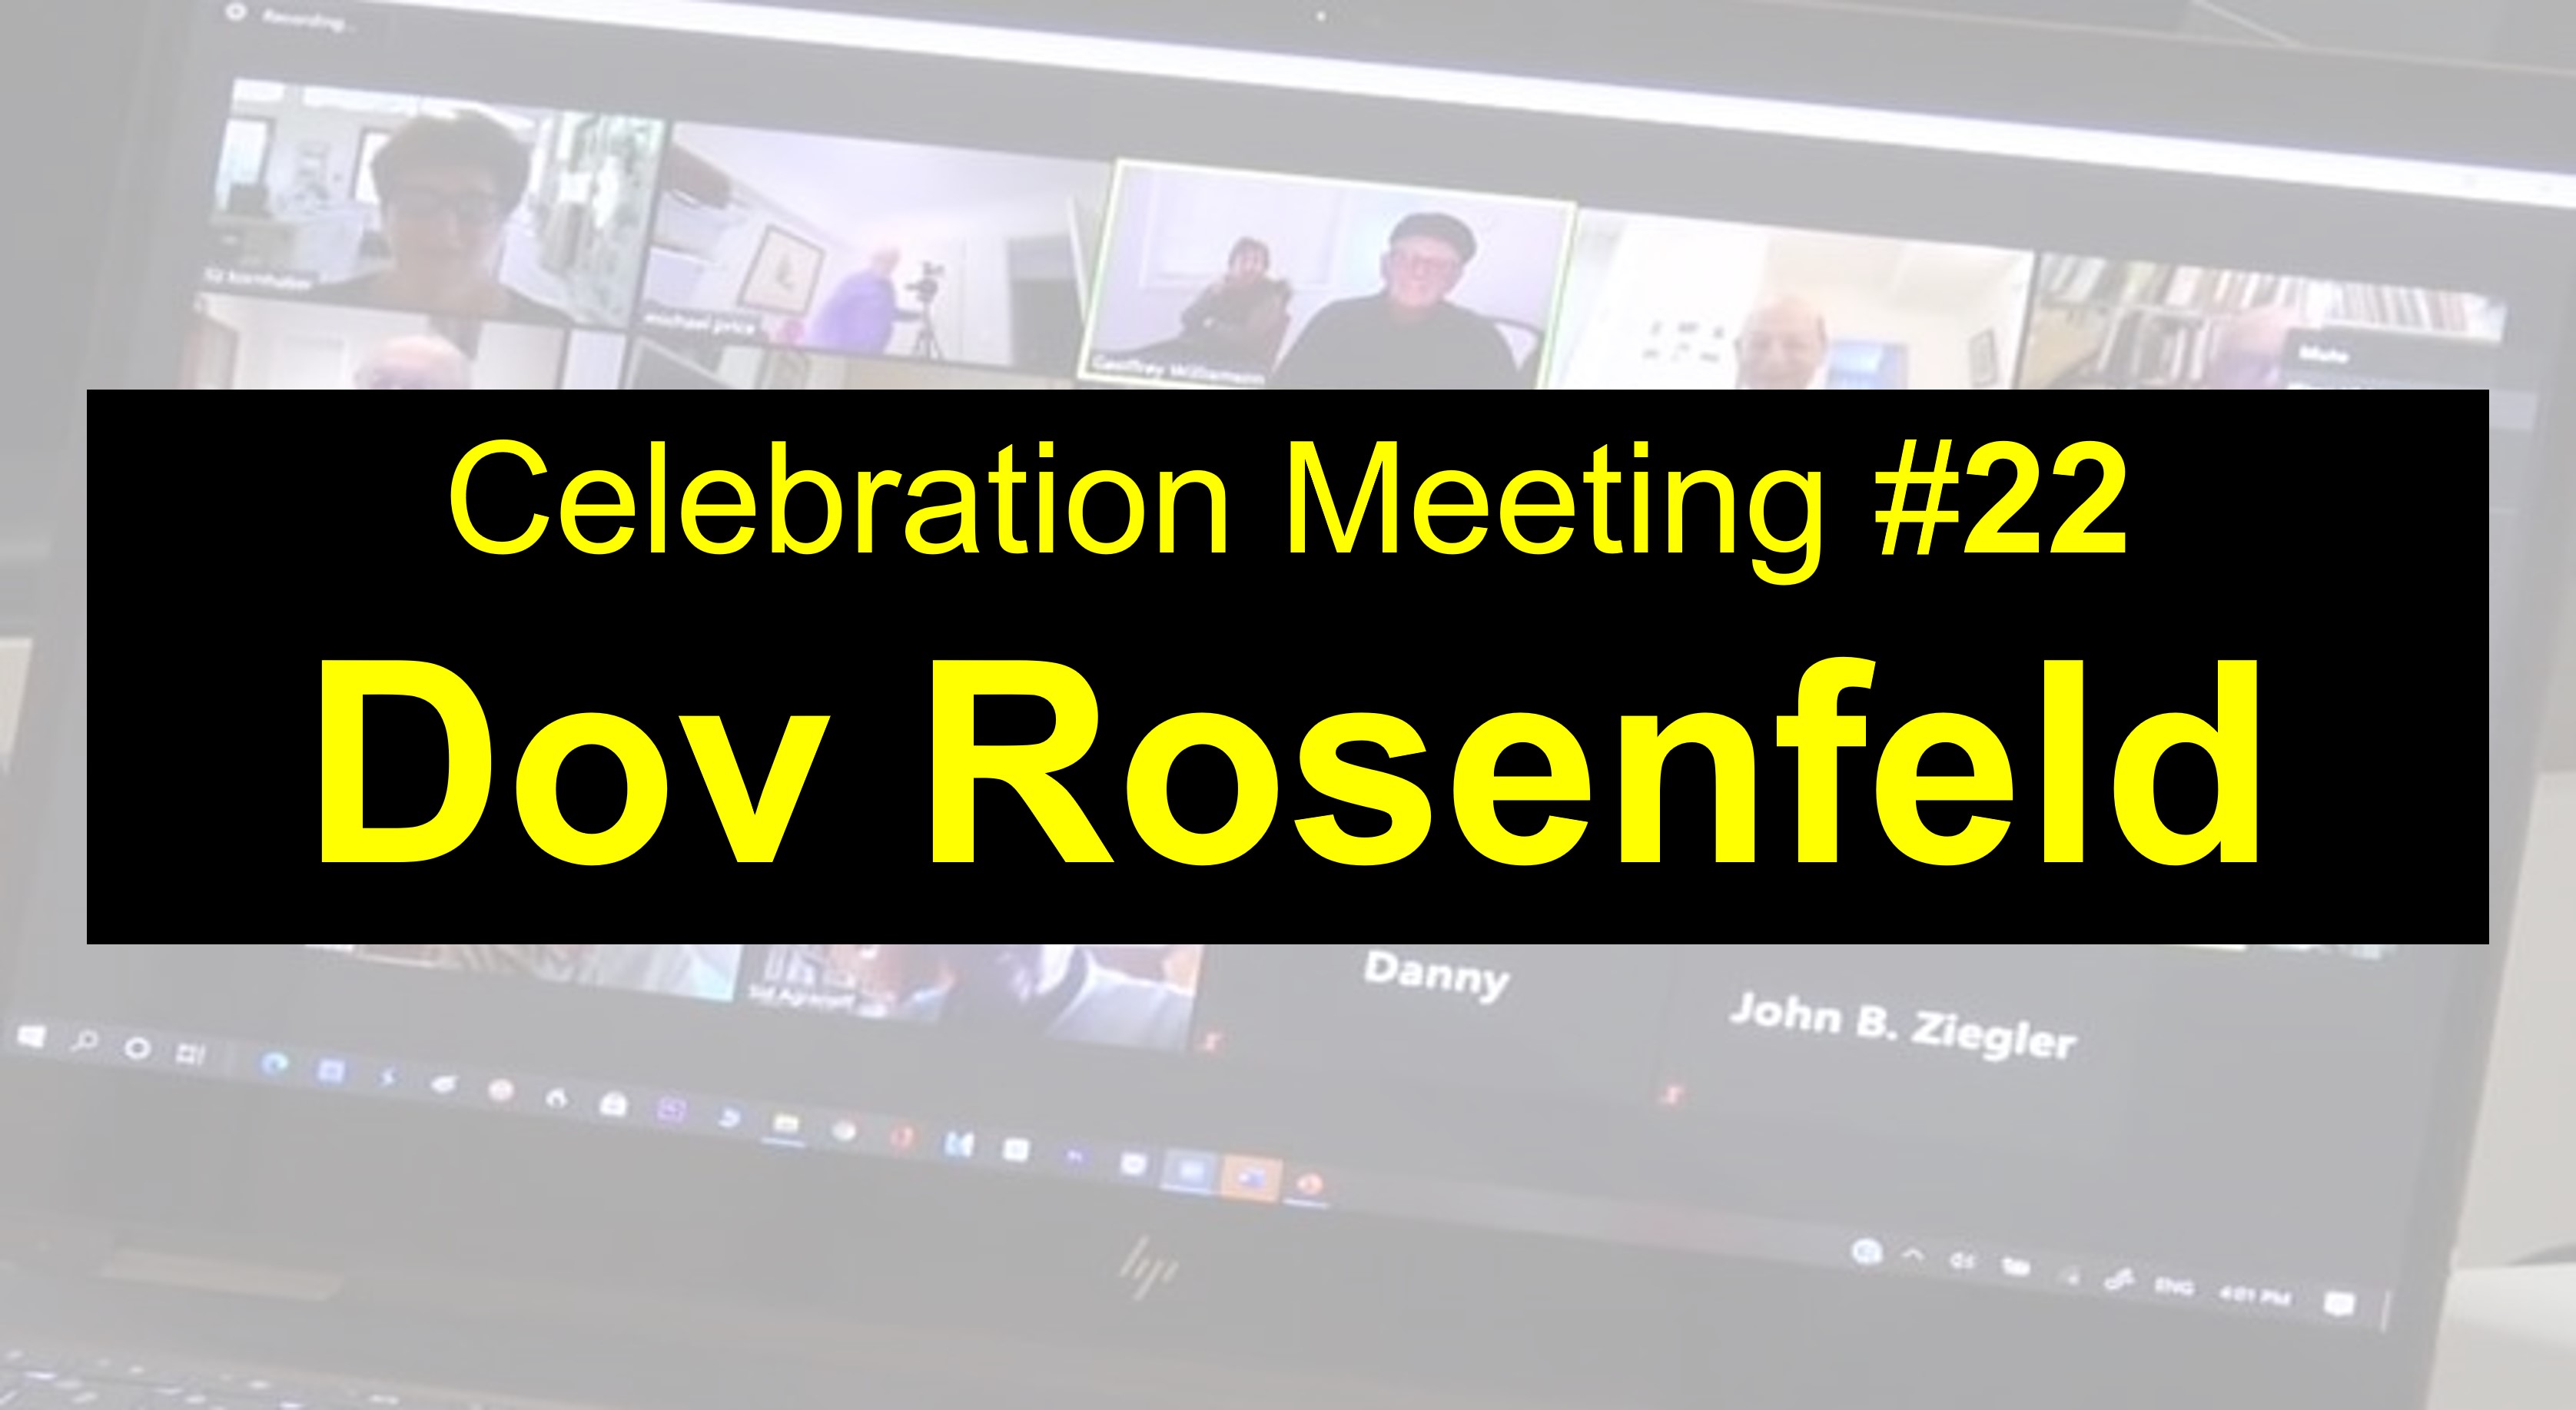  #43 2022 - Celebration Meeting - #22 Dov Rosenfeld